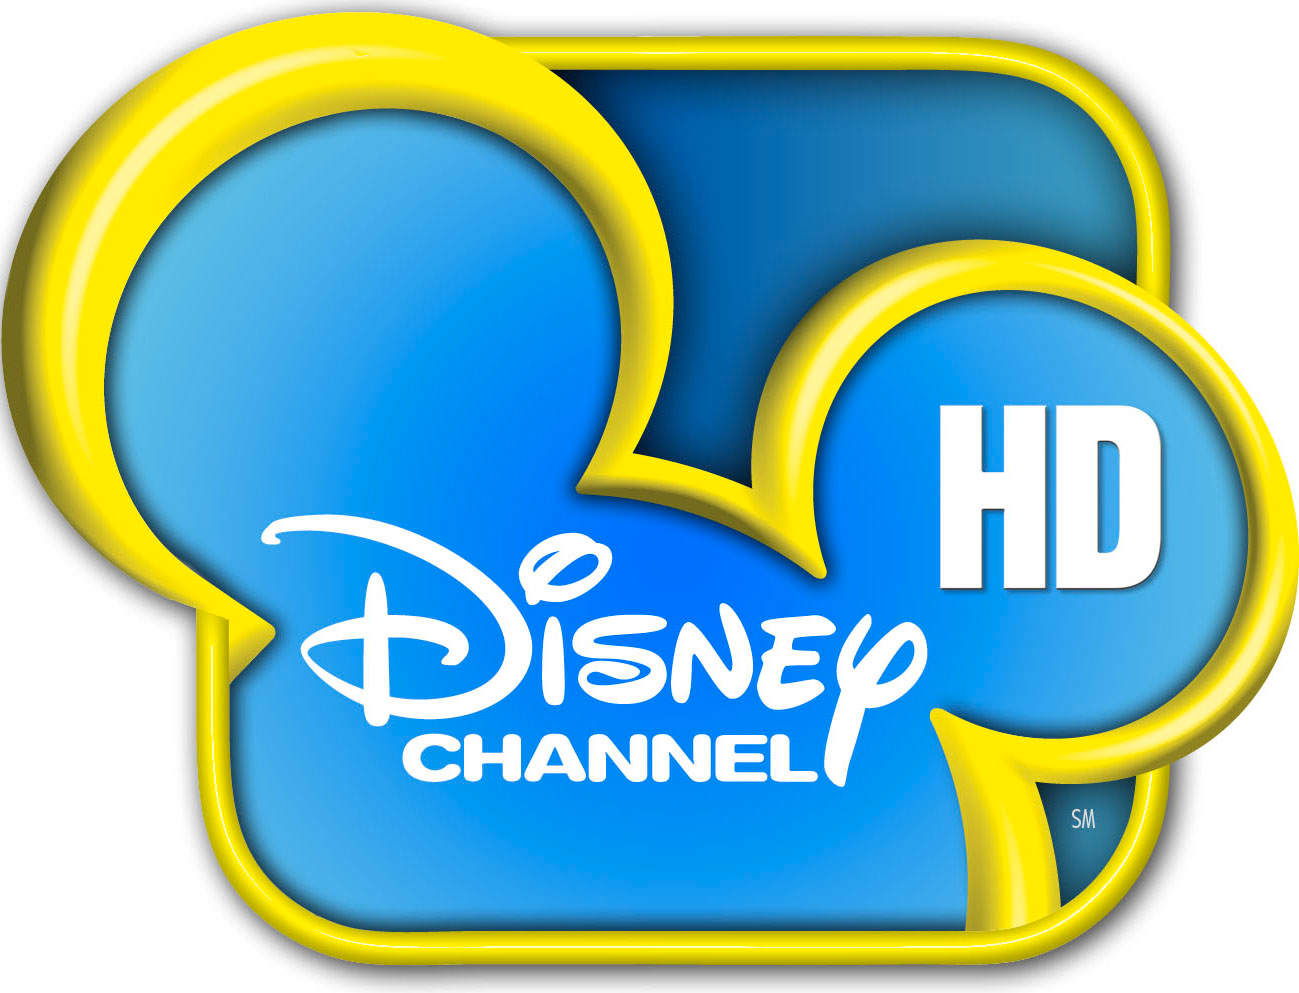 Disney Channel De Hd.png - Disney, Transparent background PNG HD thumbnail